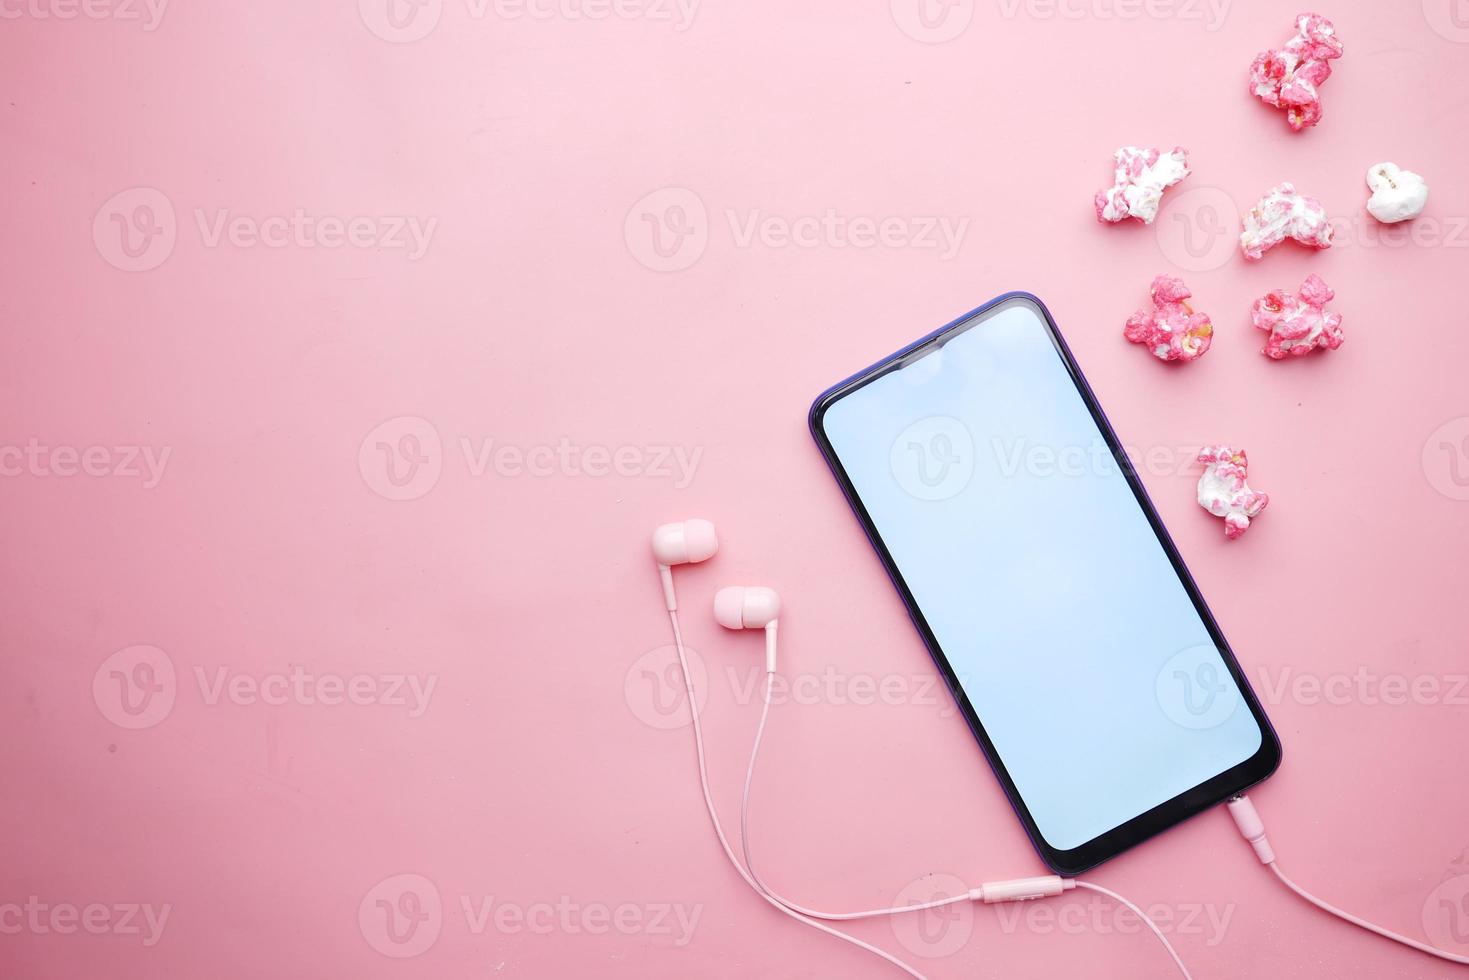 vista dall'alto di smartphone, auricolari e popcorn in rosa foto